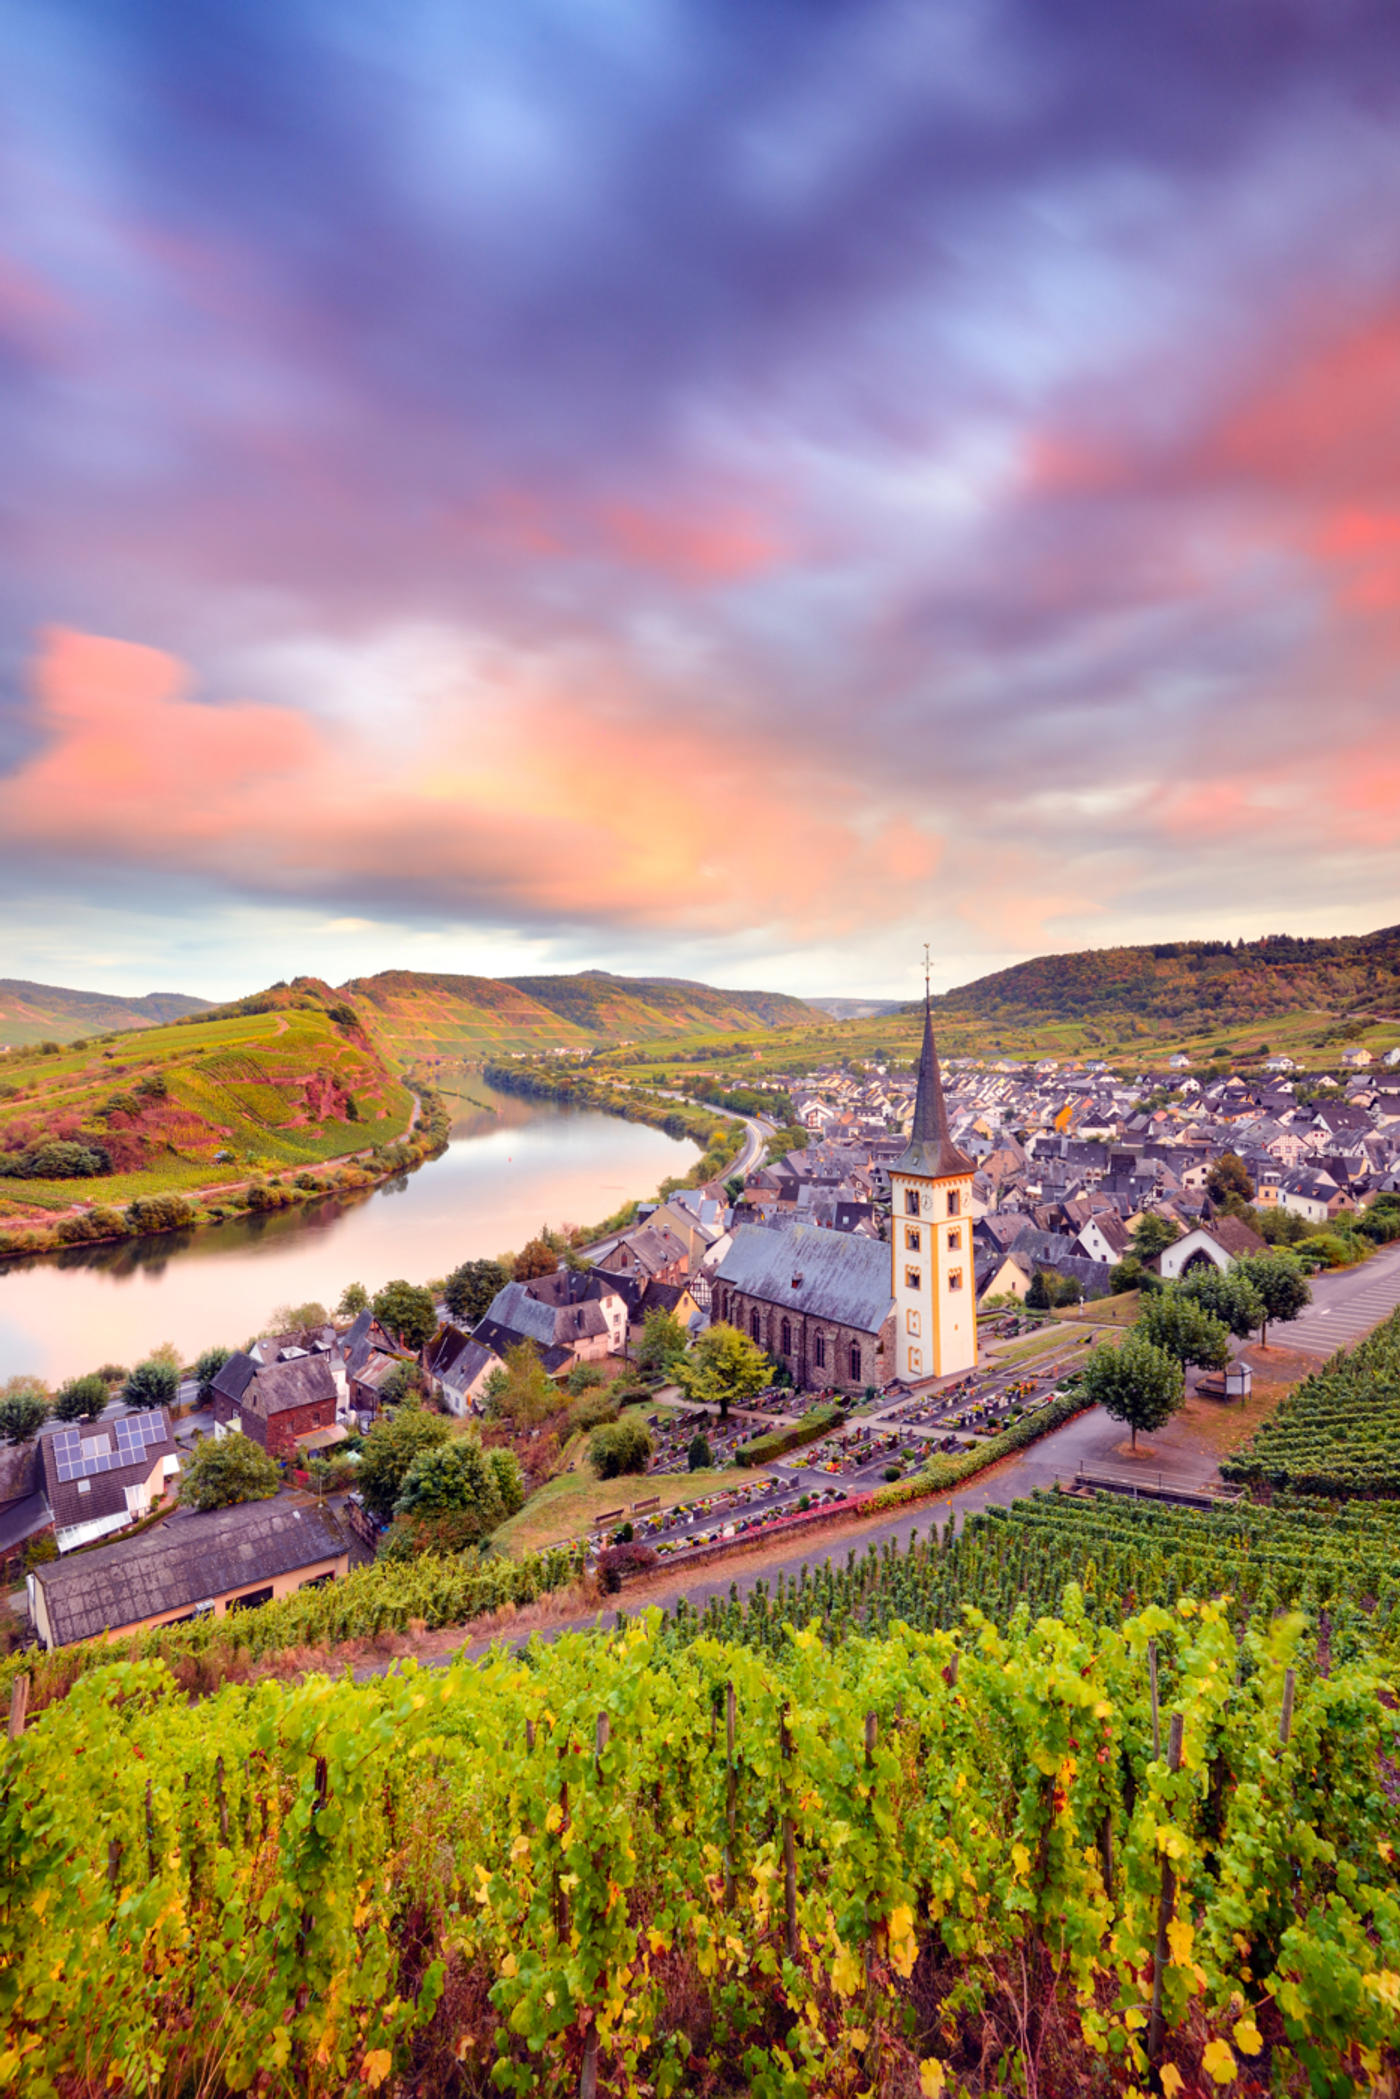 Rhineland-Palatinate: A dream destination for explorers